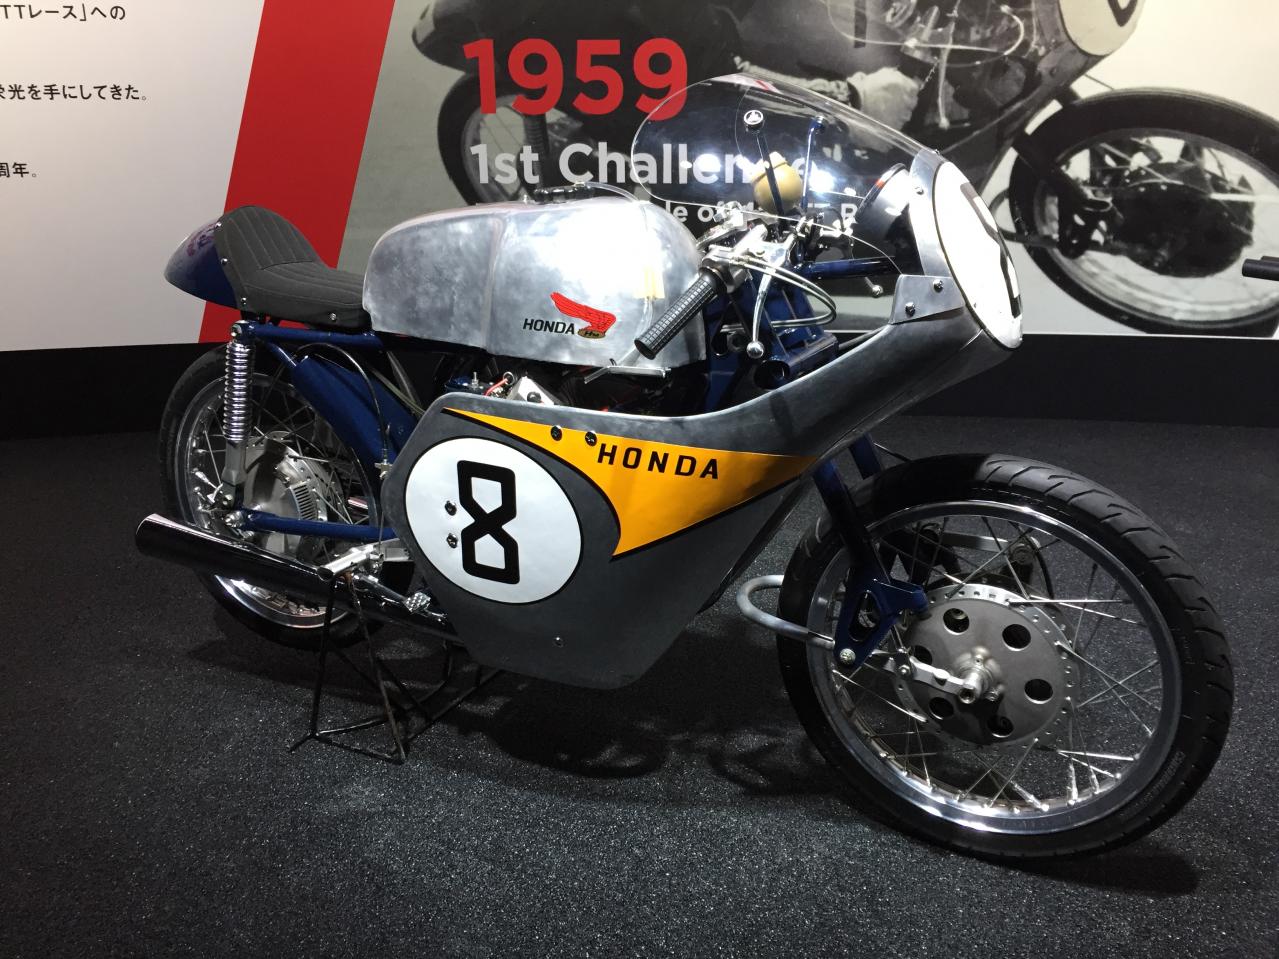 ホンダ Rc142を復元 ロードレース用バイクは60年でココまで進化した 東京モーターショー19 Motor Fan Bikes モータファンバイクス